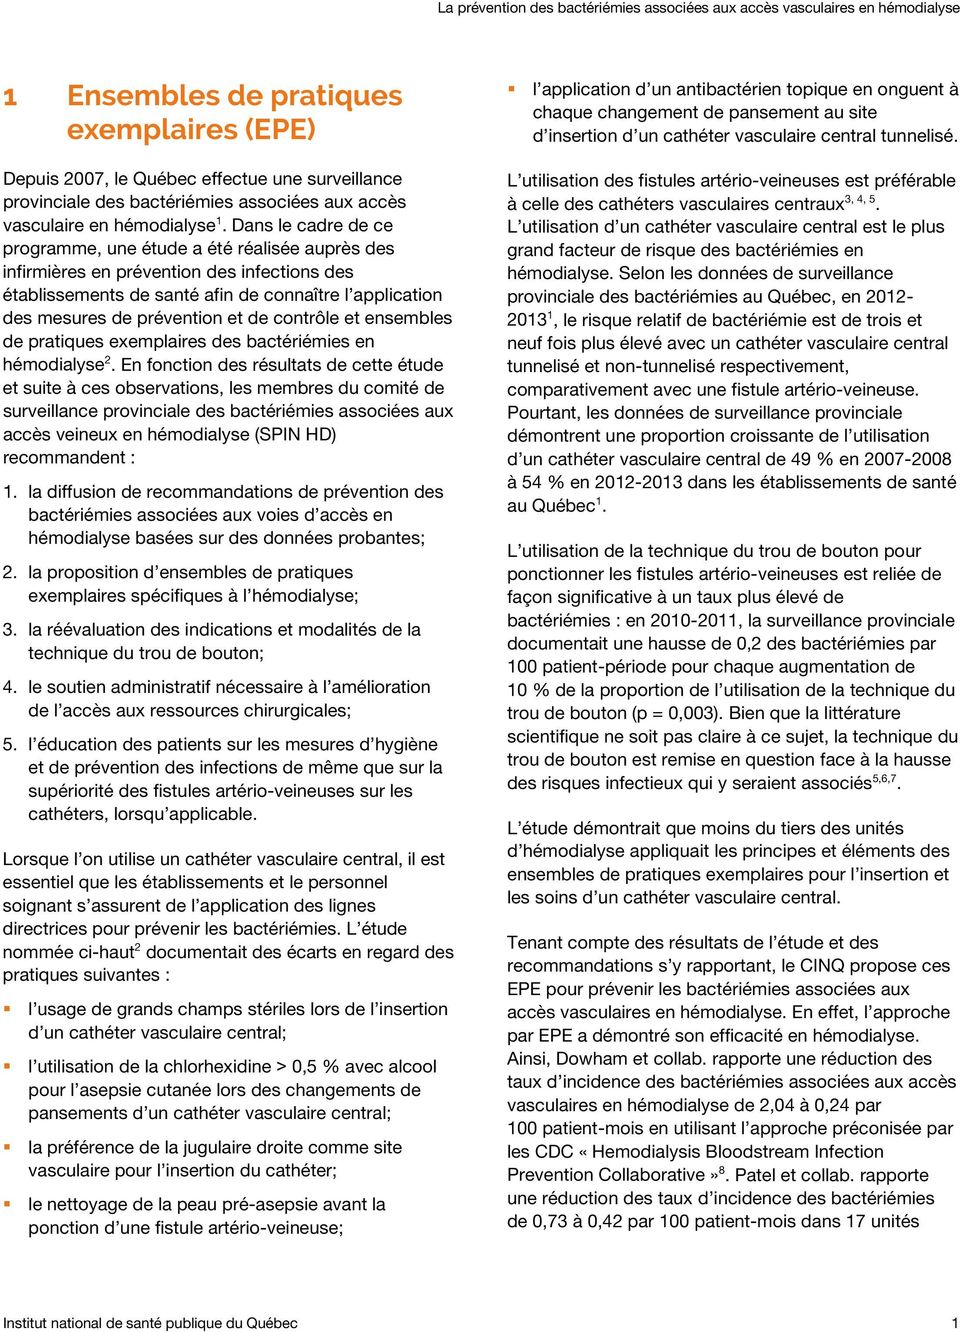 contrôle et ensembles de pratiques exemplaires des bactériémies en hémodialyse 2.